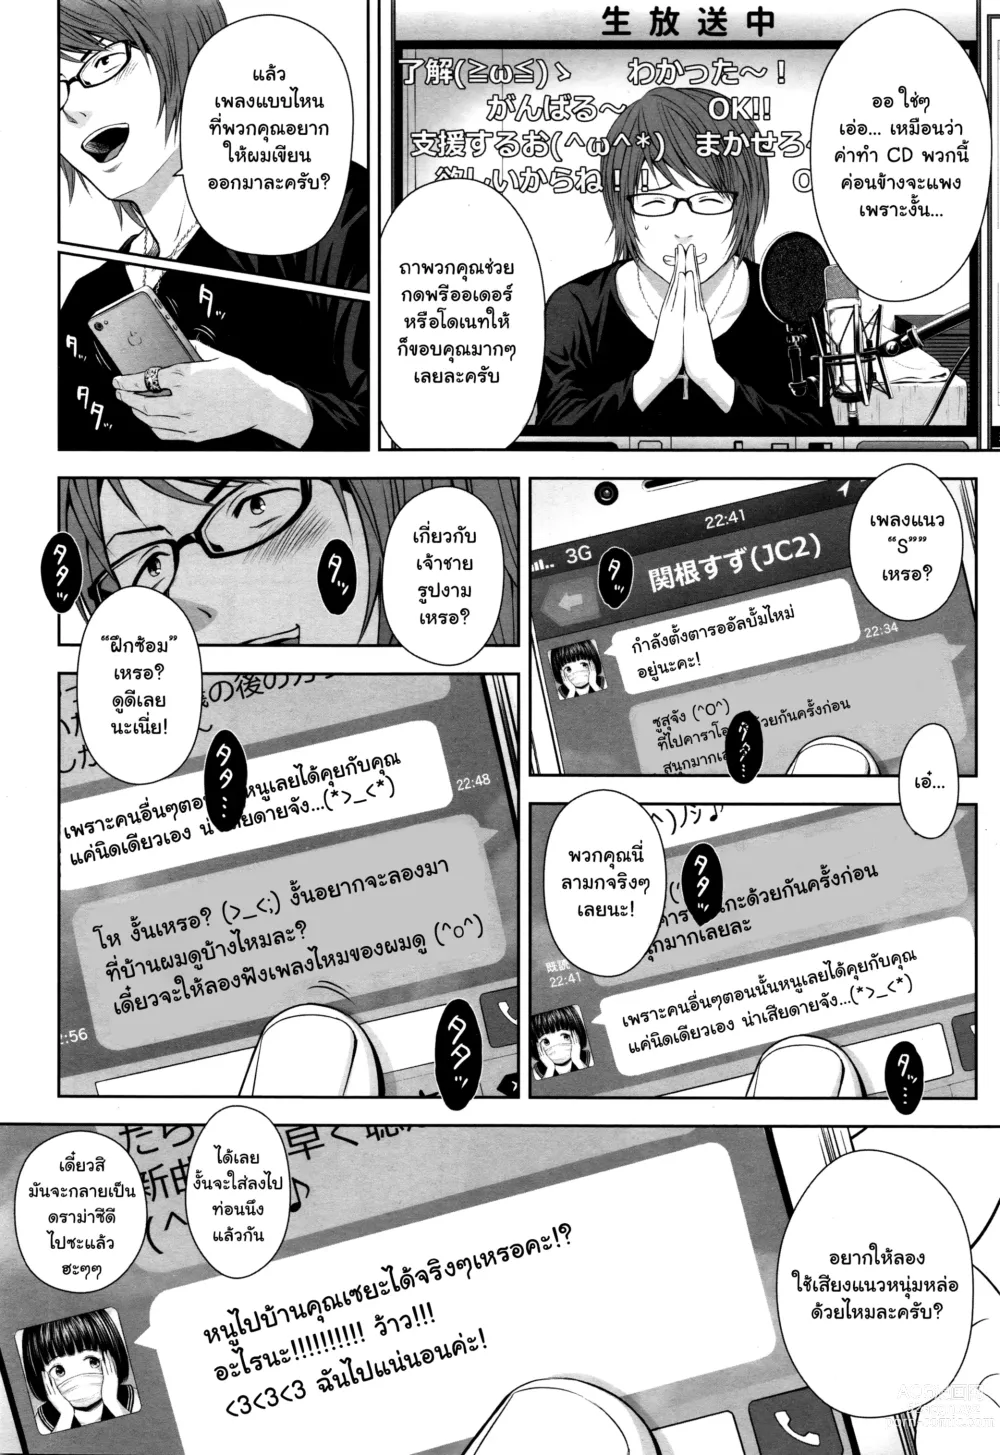 Page 4 of doujinshi Utaite no Ballad Ch. 1